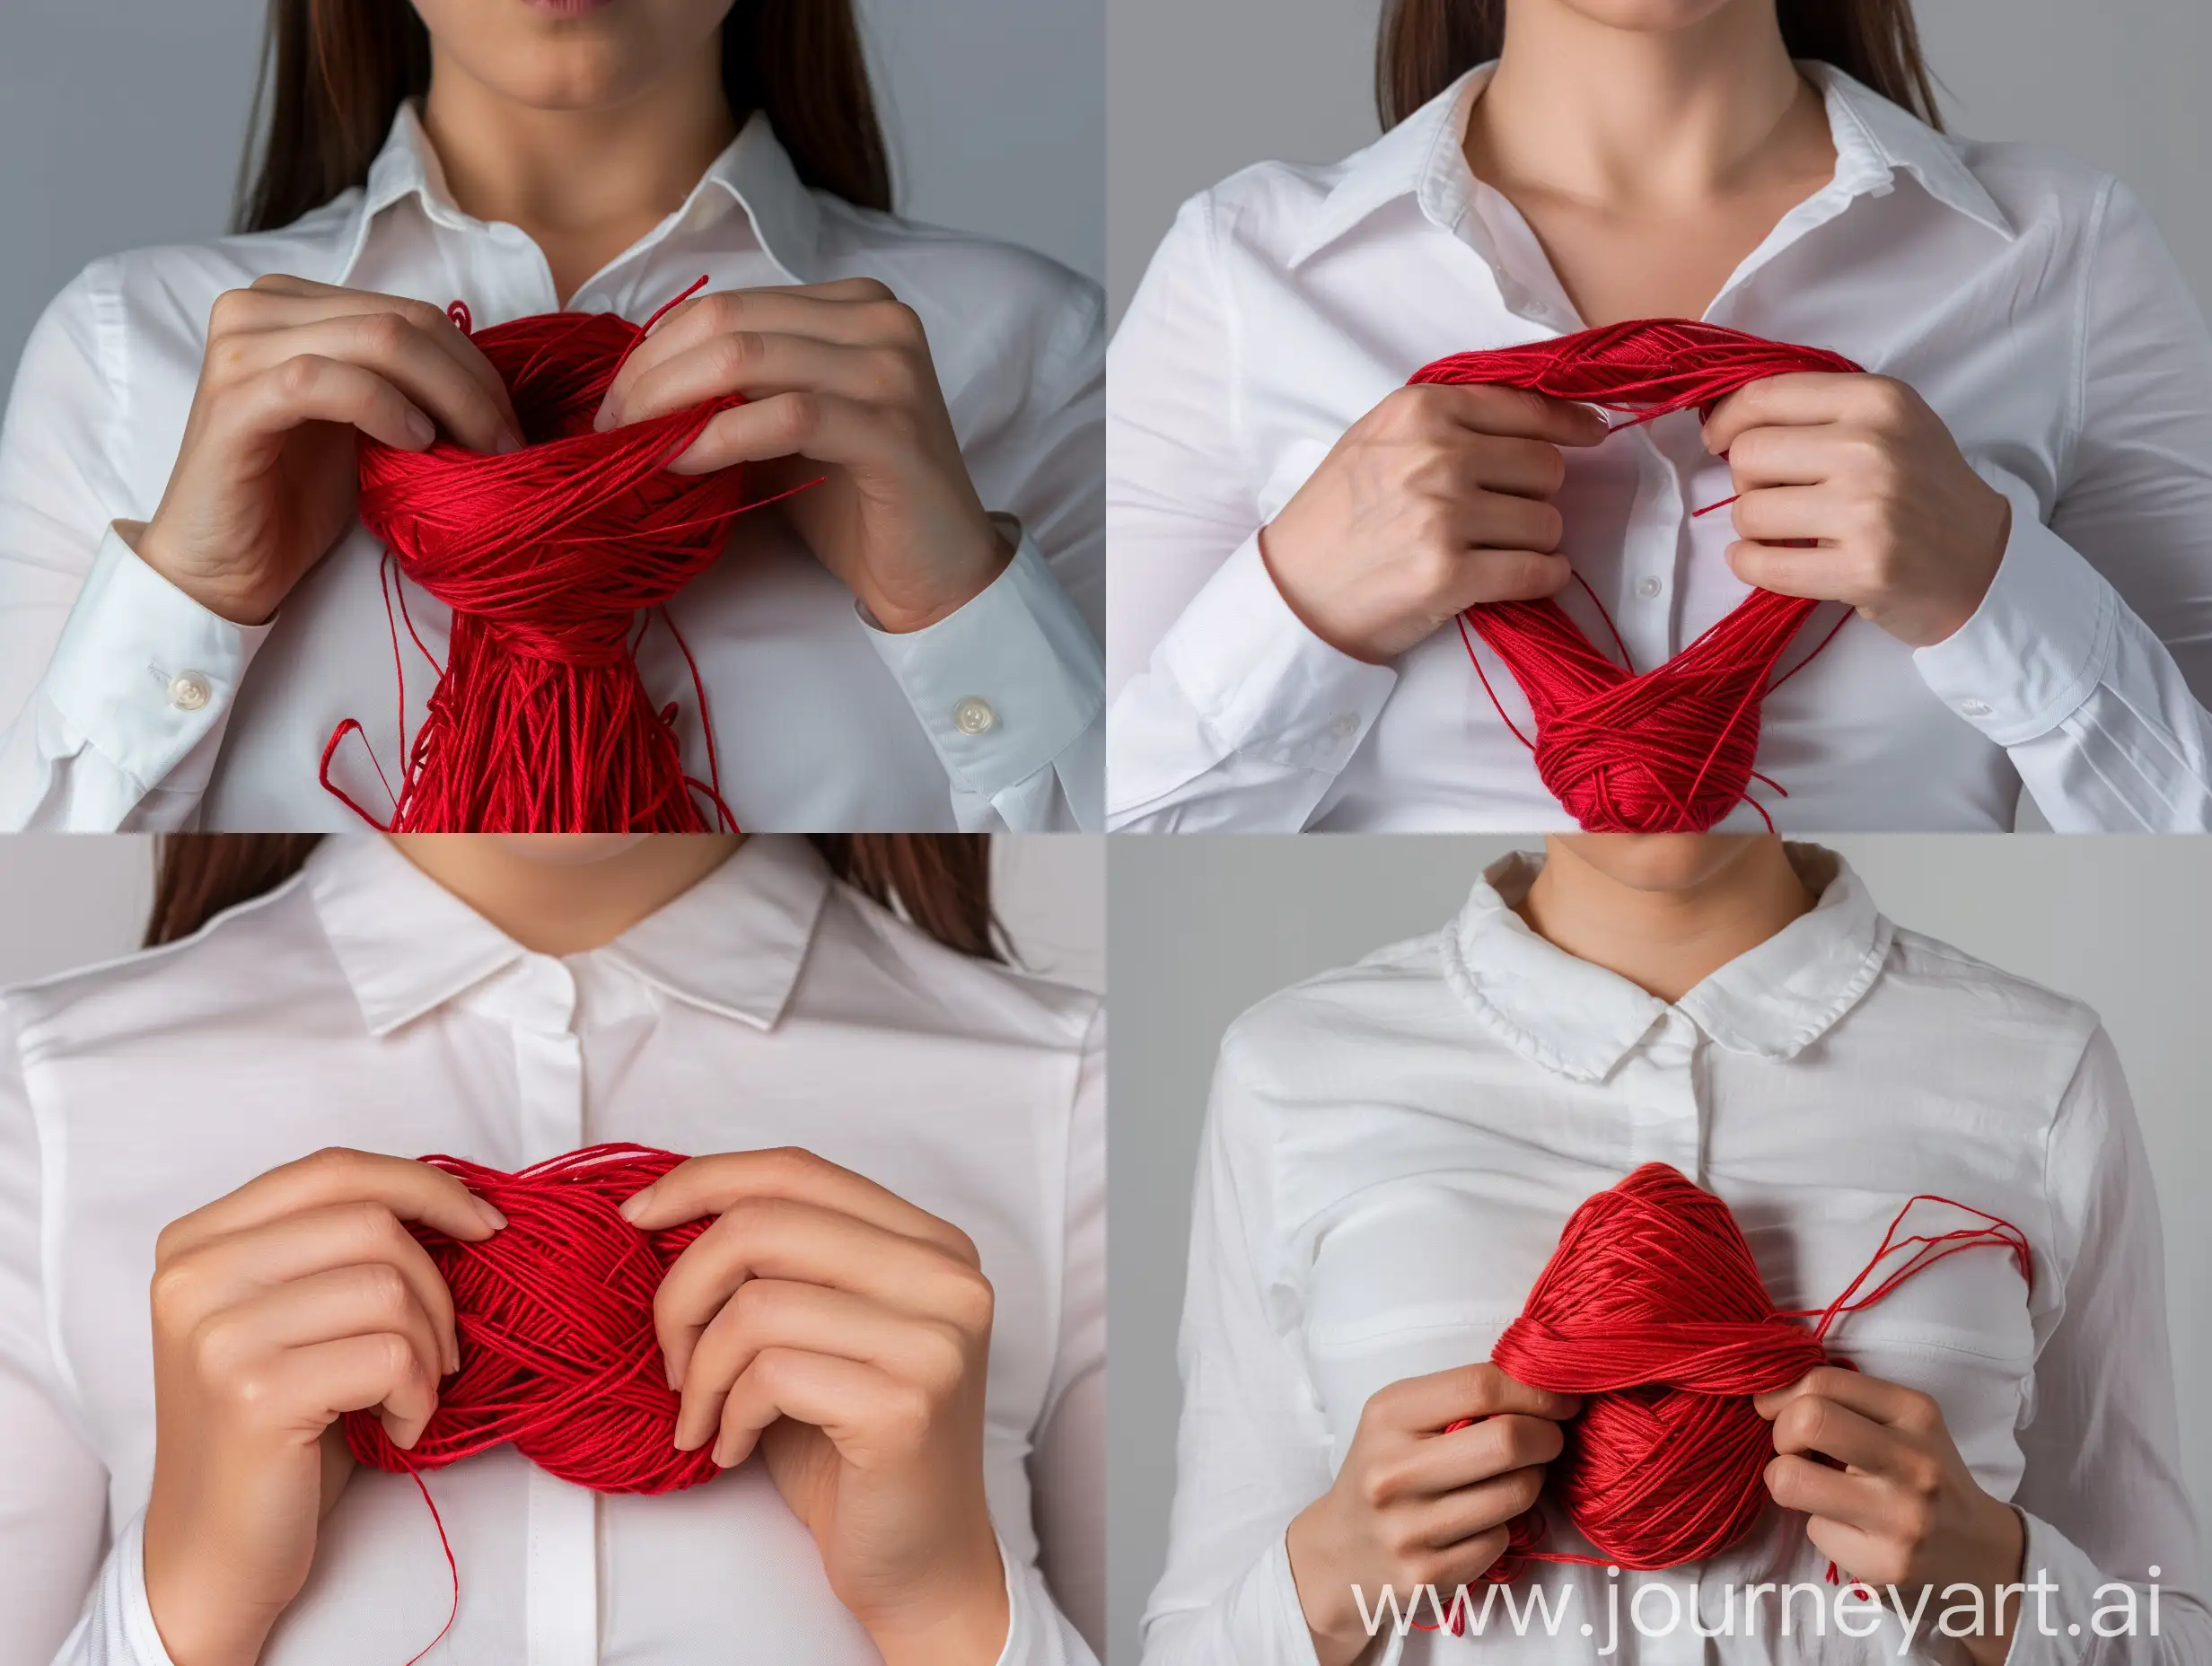 красивые женские руки держат у груди красные мотки ниток, белая простая рубашка, реалистичный фотоснимок, 8к, 